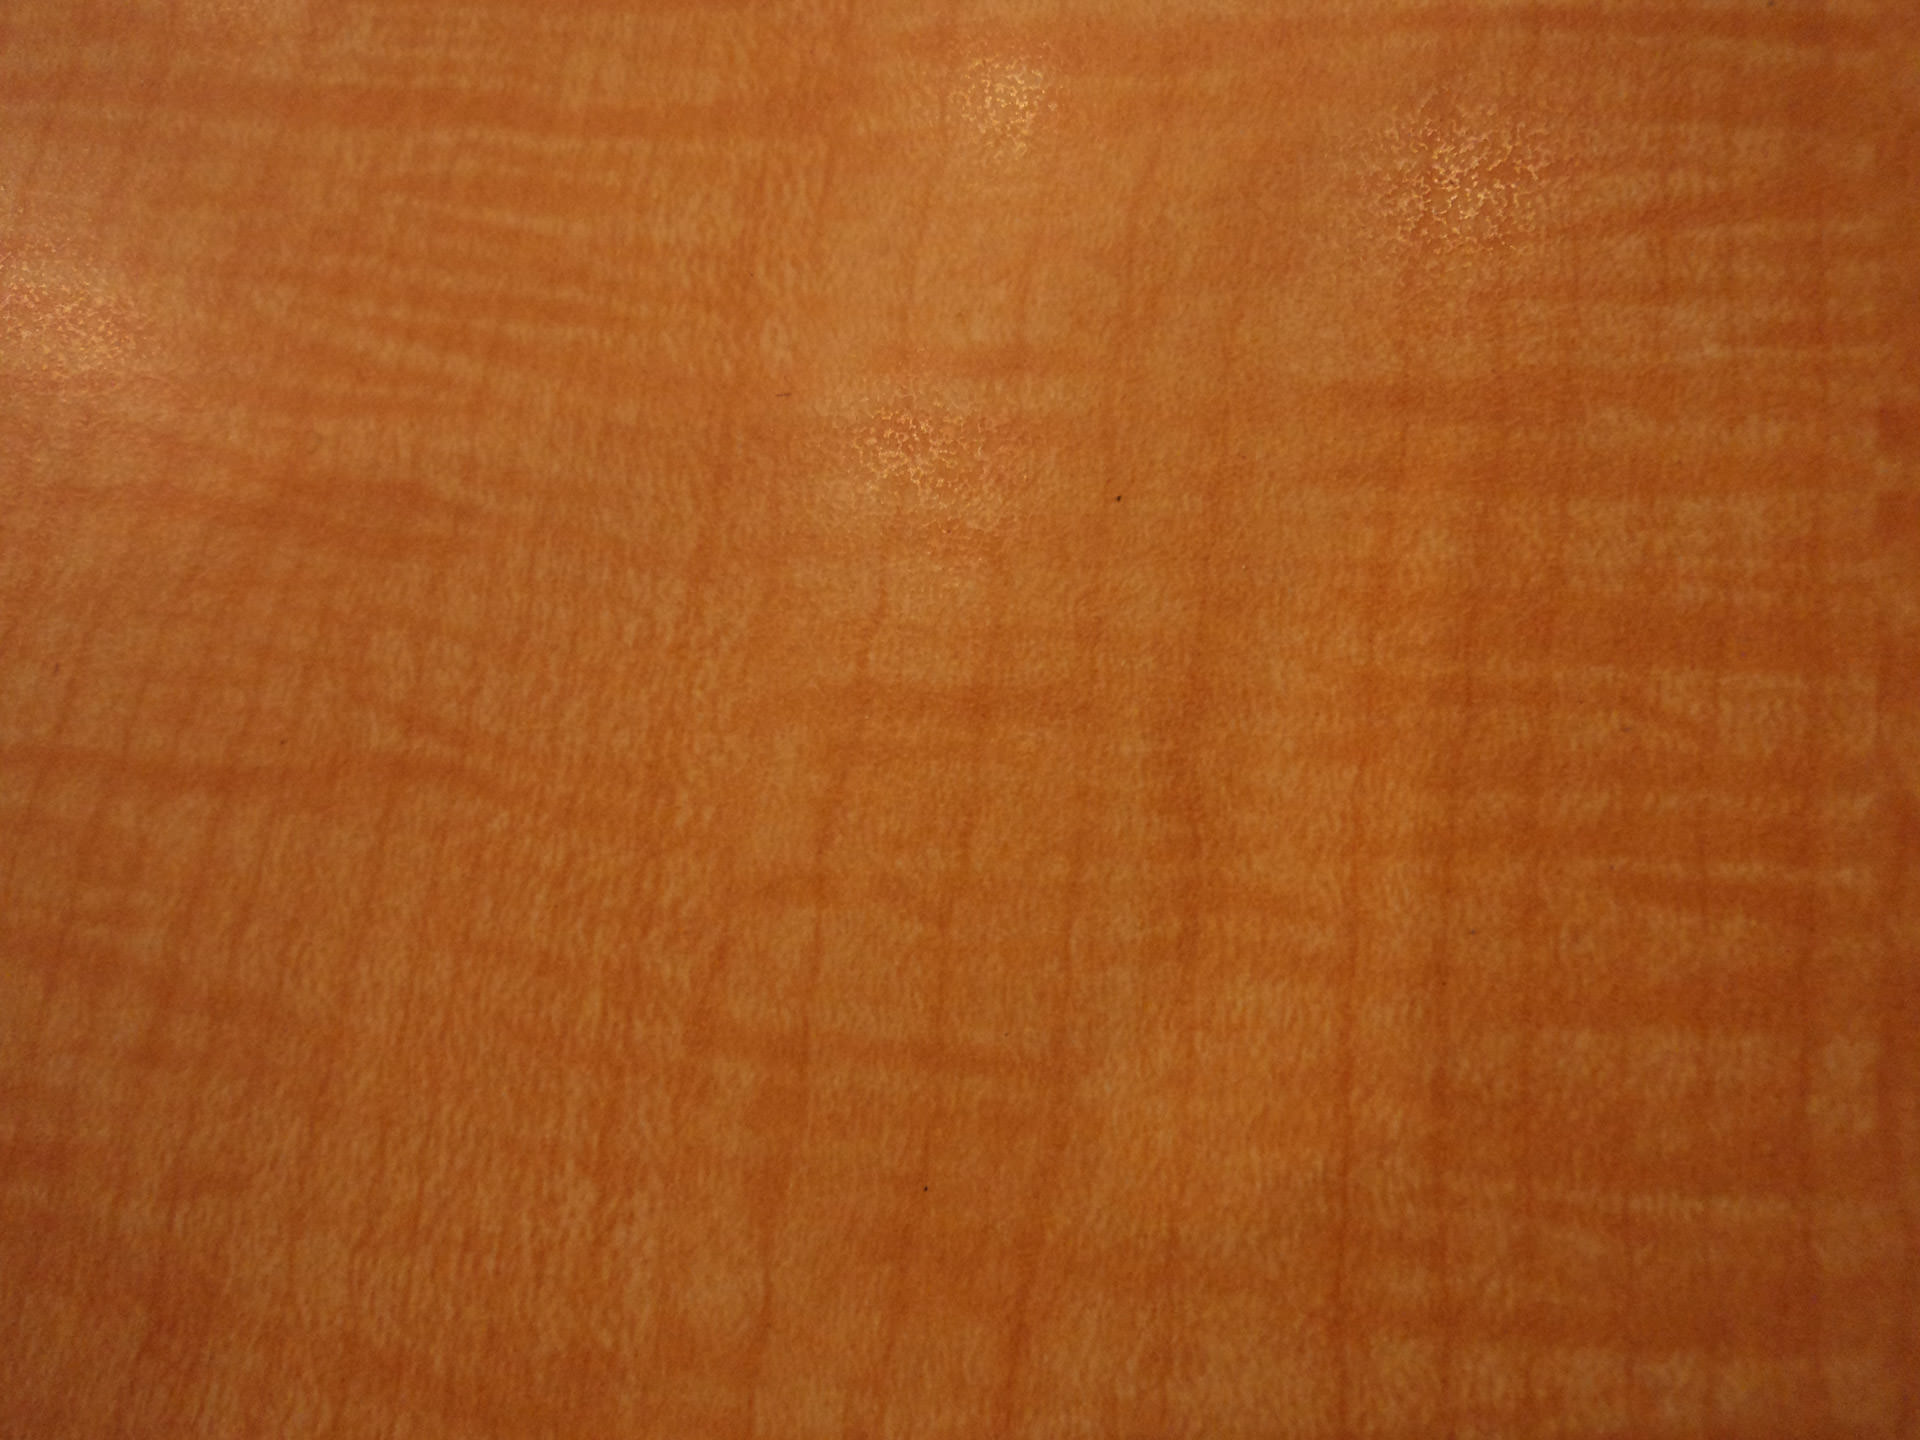 light brown wallpaper,orange,brown,wood,tan,caramel color